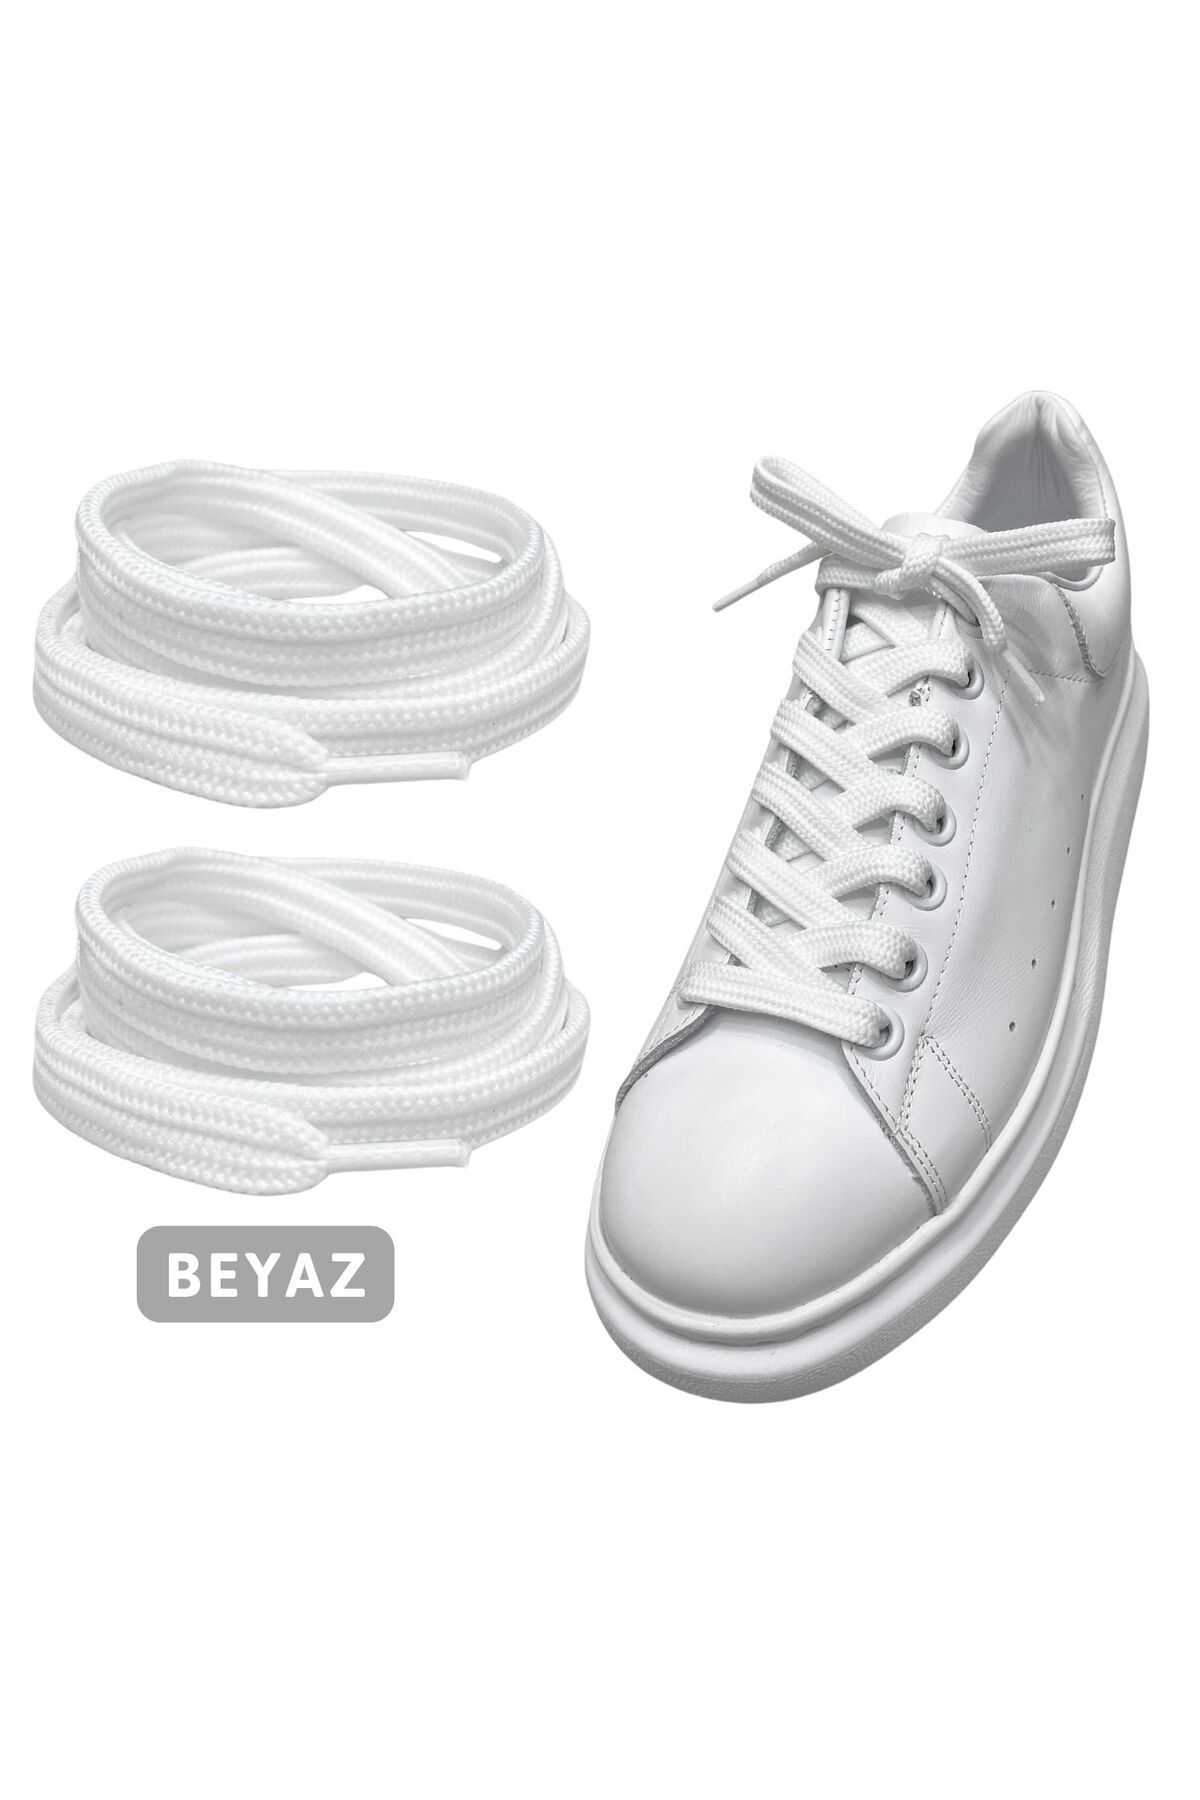 ipekbazaar Exclusice 120 Cm Beyaz Yassı Spor Ayakkabı Bağcığı, Çift Katmanlı Örgülü Sneakers Bağcık, 1 Çift